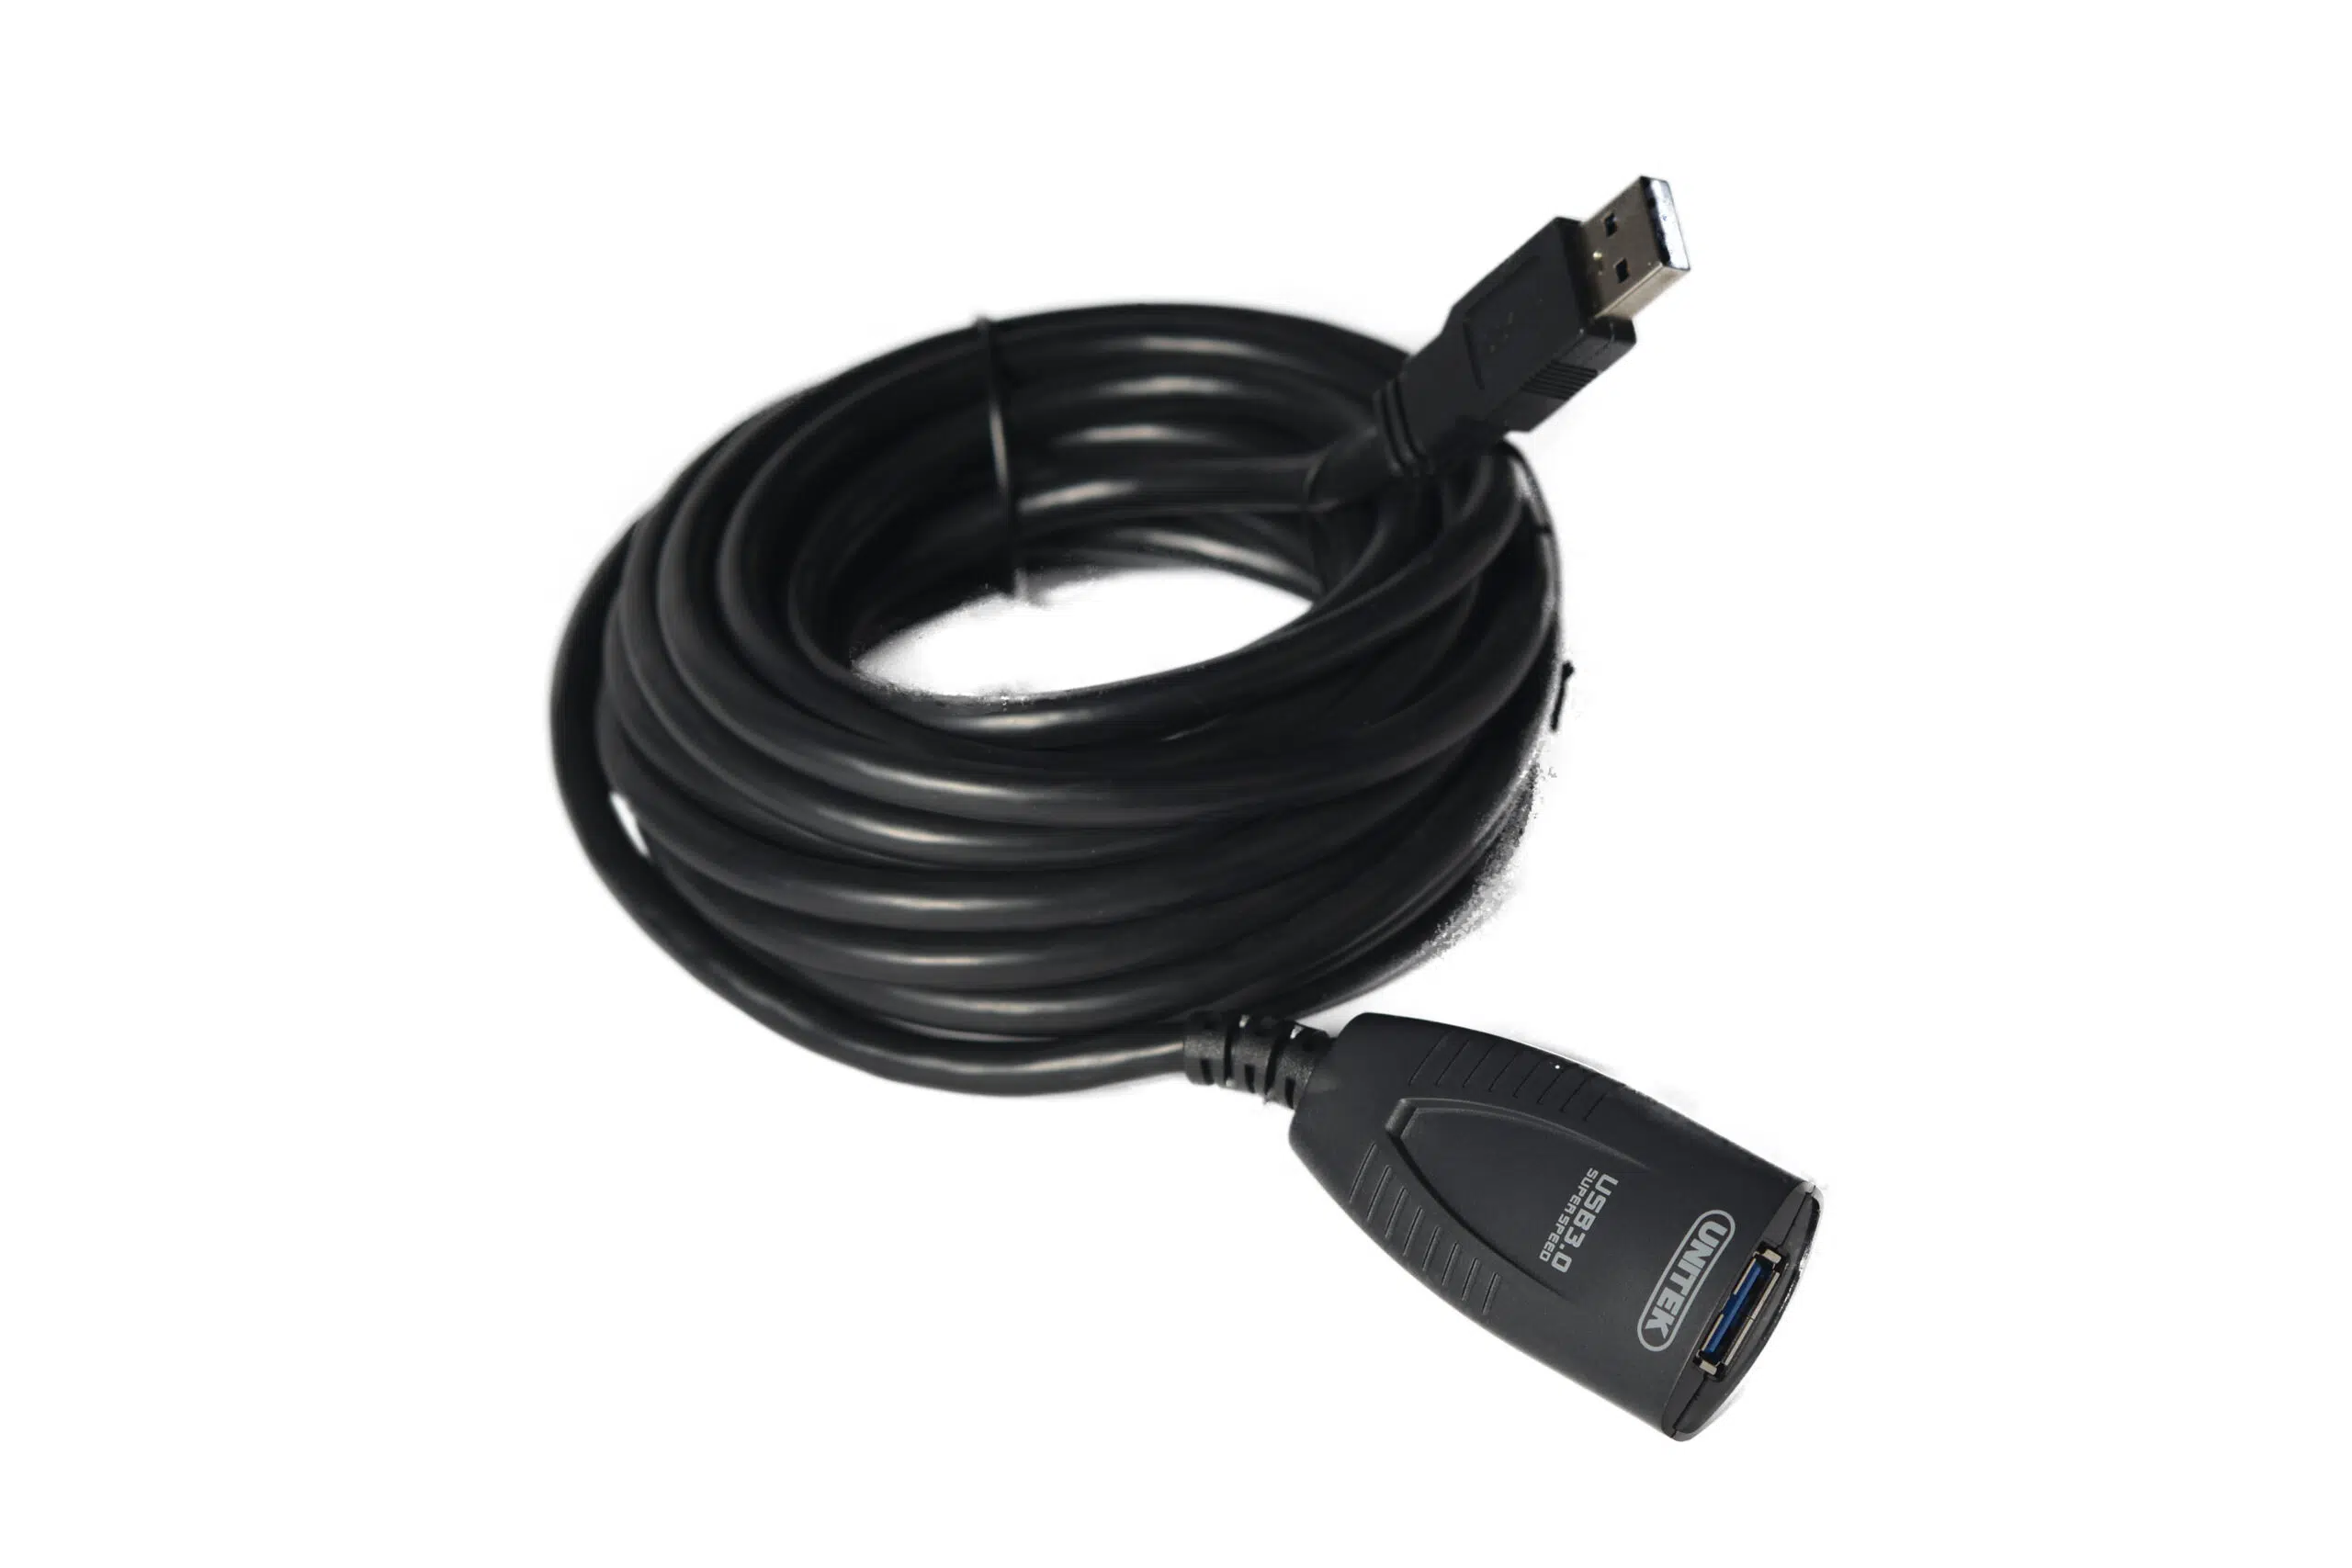 CYCON – 5 Meter USB 3.0 Verlängerungskabel – nerdytec